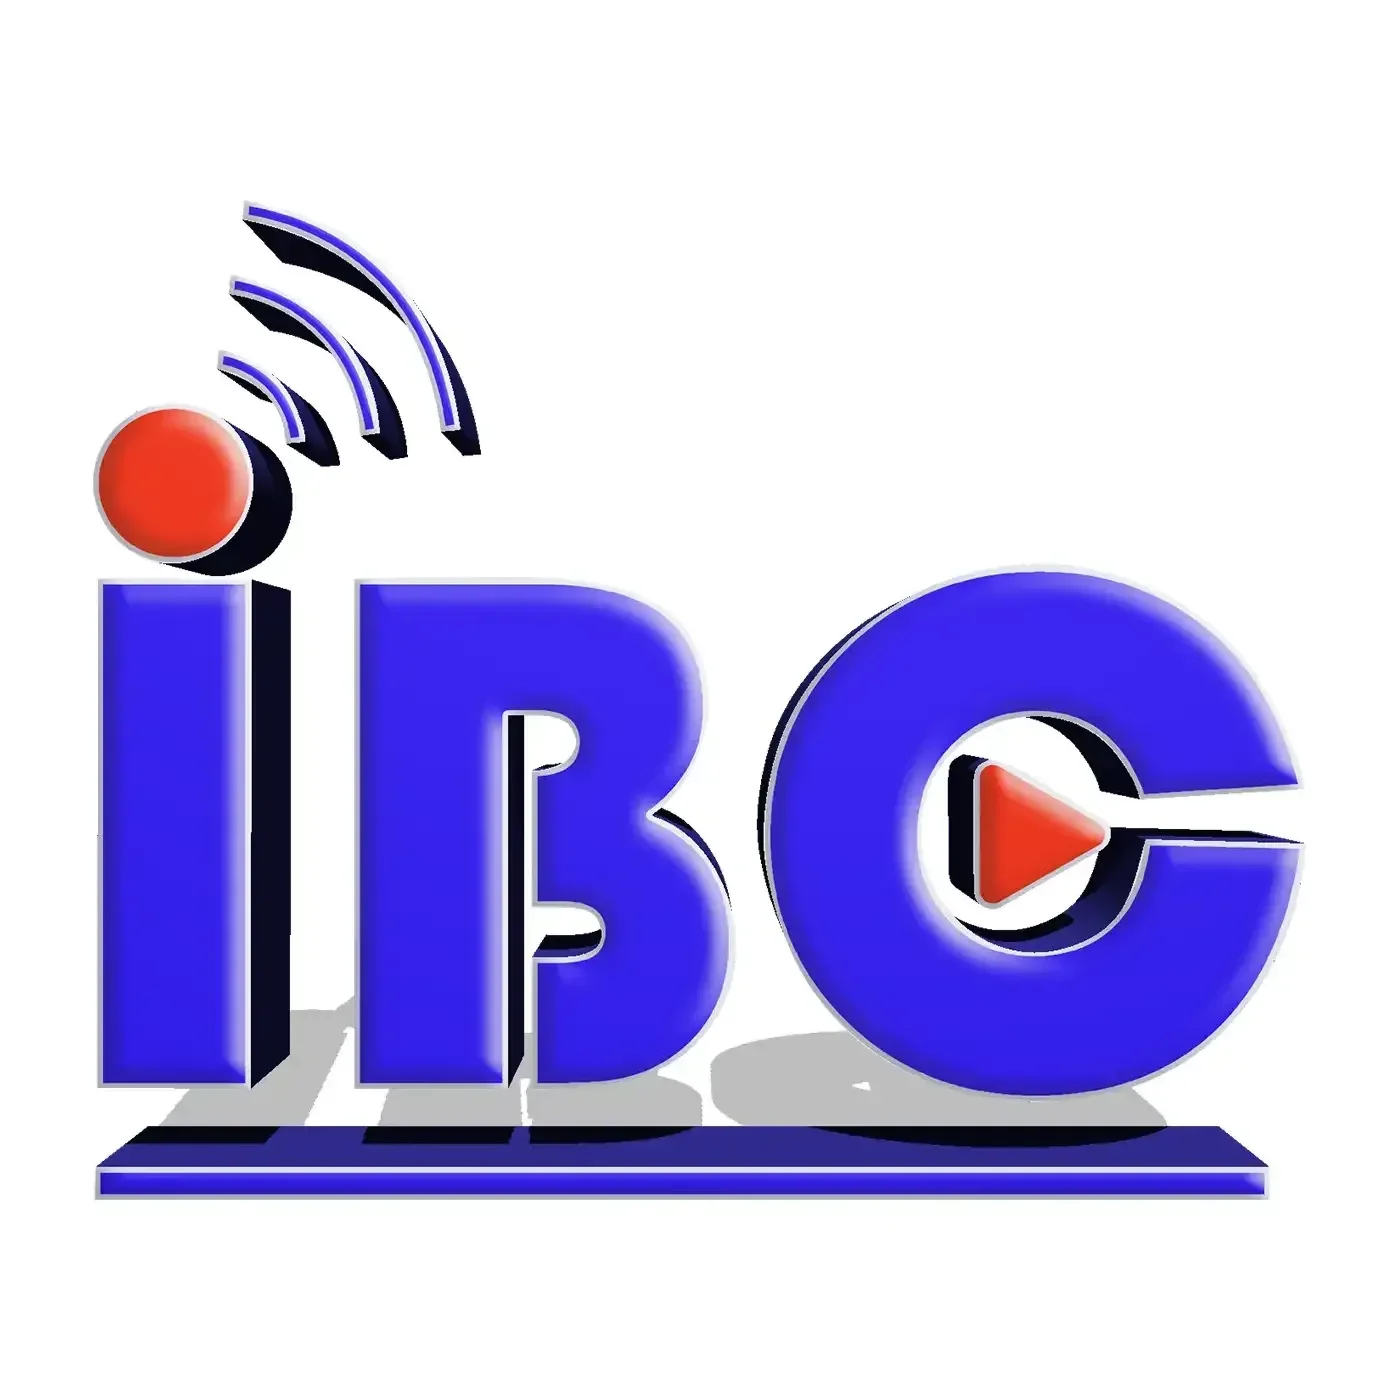 IBC TV